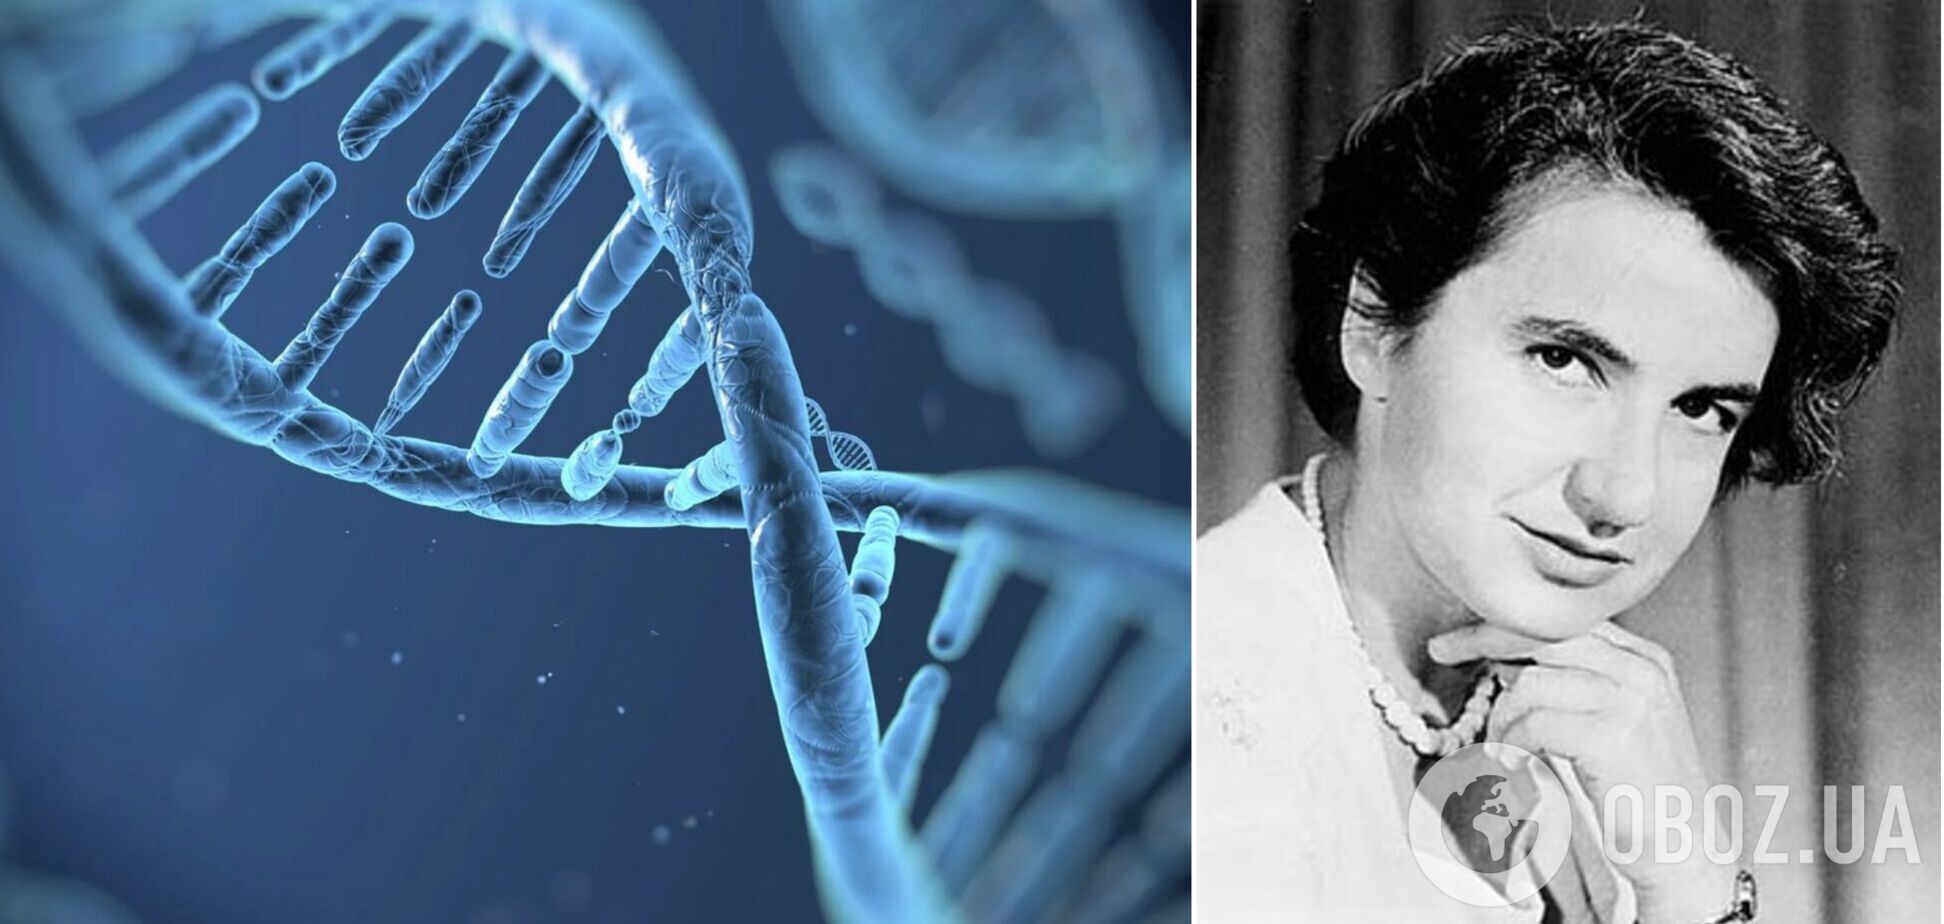 Как выглядело первое в истории фото ДНК и кто его сделал